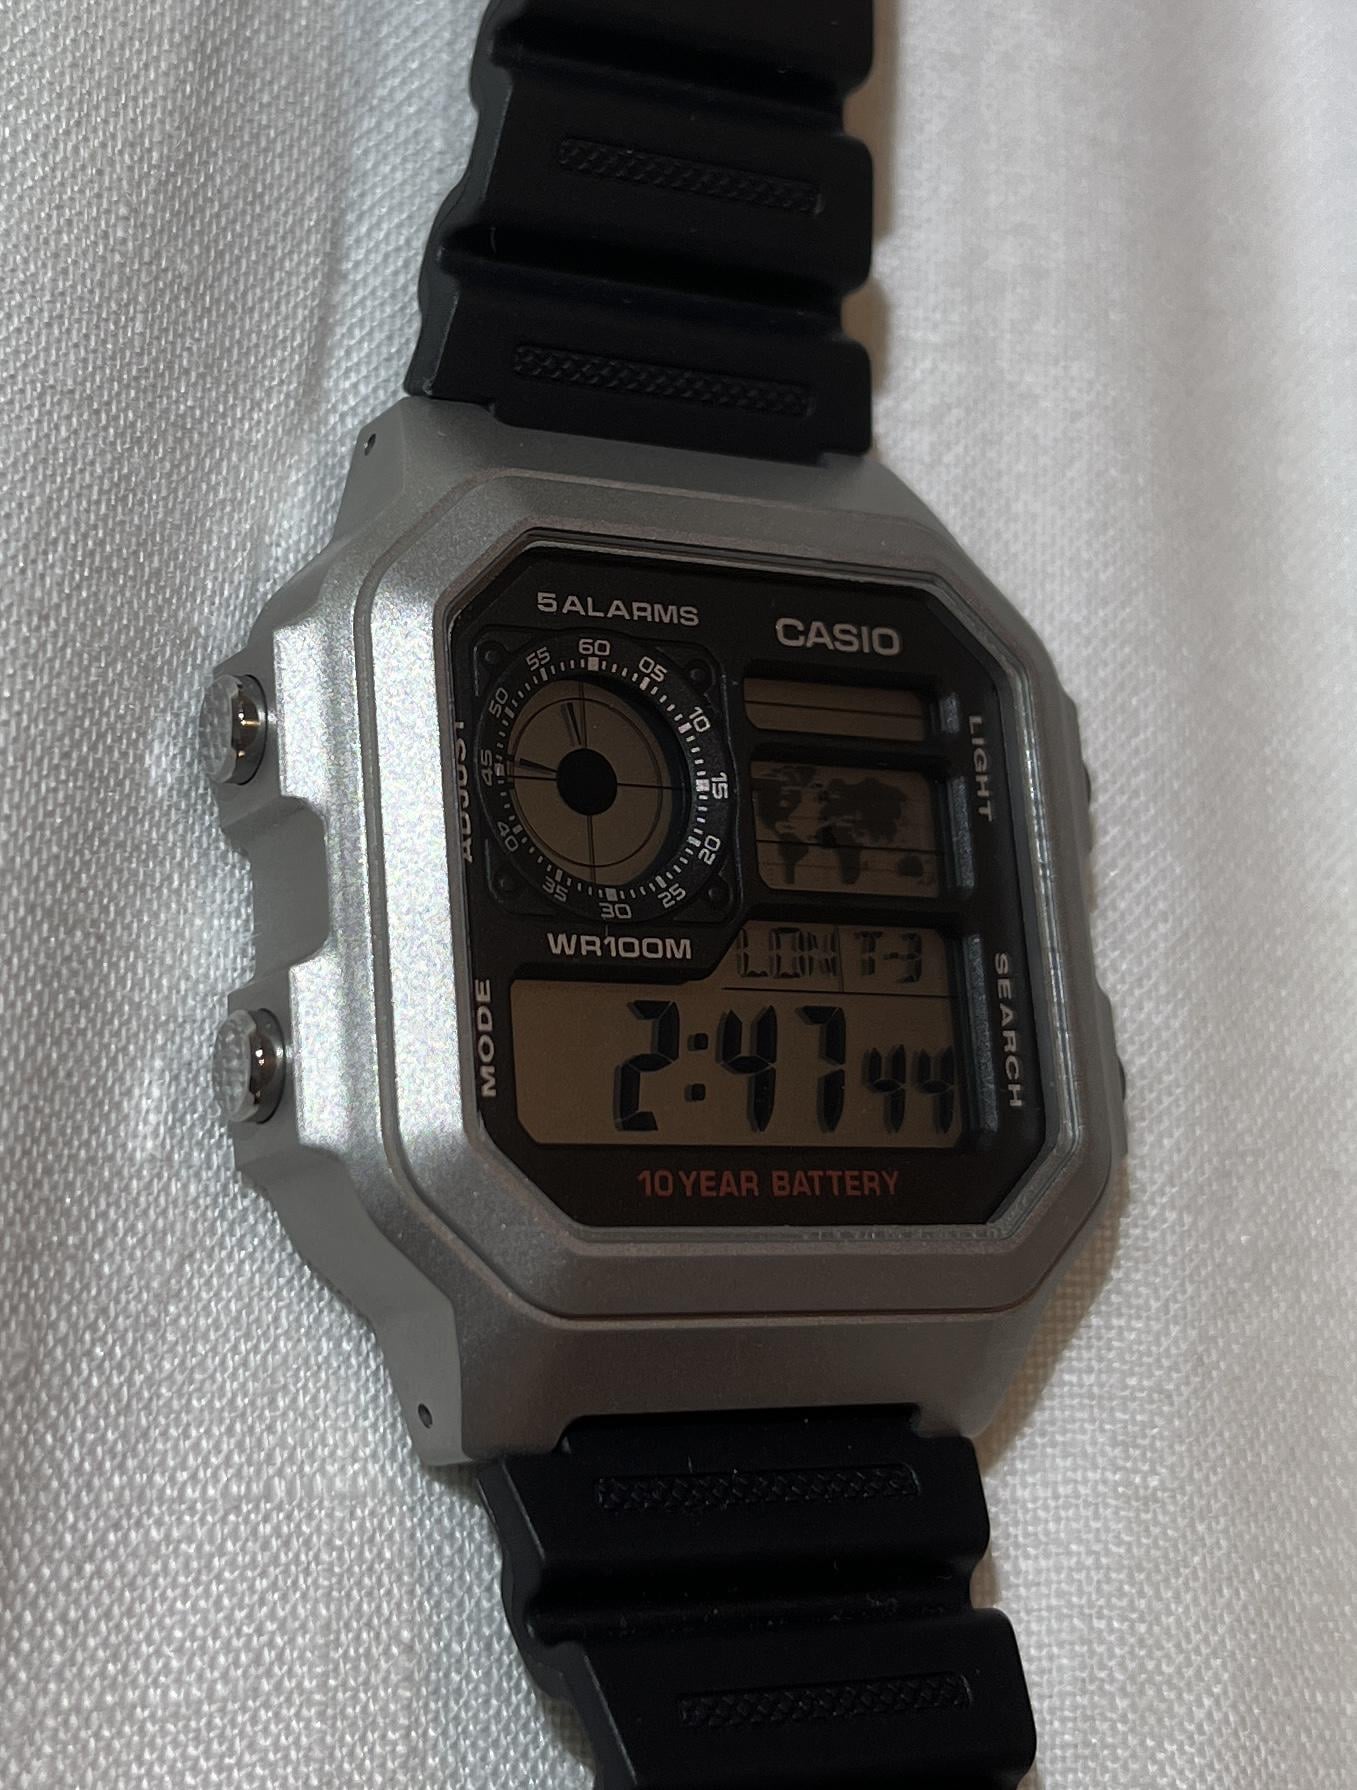 Casio AE1200 Part 3: Kranio Designs Case - The Time Bum